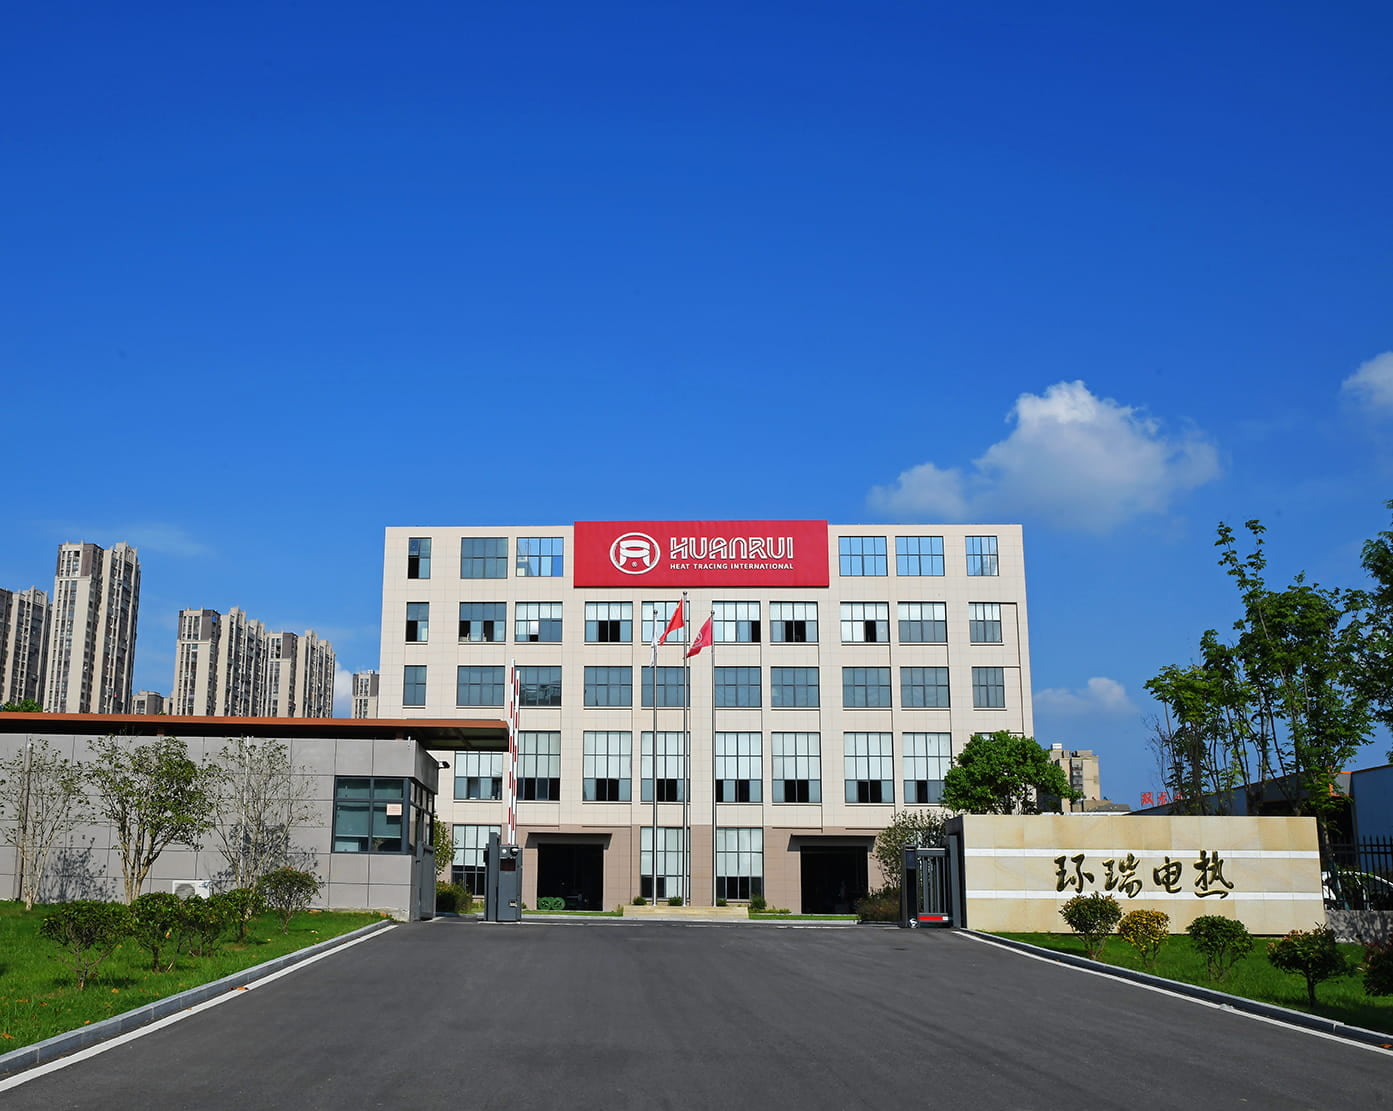 Celebre calurosamente la oferta exitosa de Anhui Huanrui para el proyecto de adquisición de accesorios y cinturón de calefacción eléctrica de CNPC
